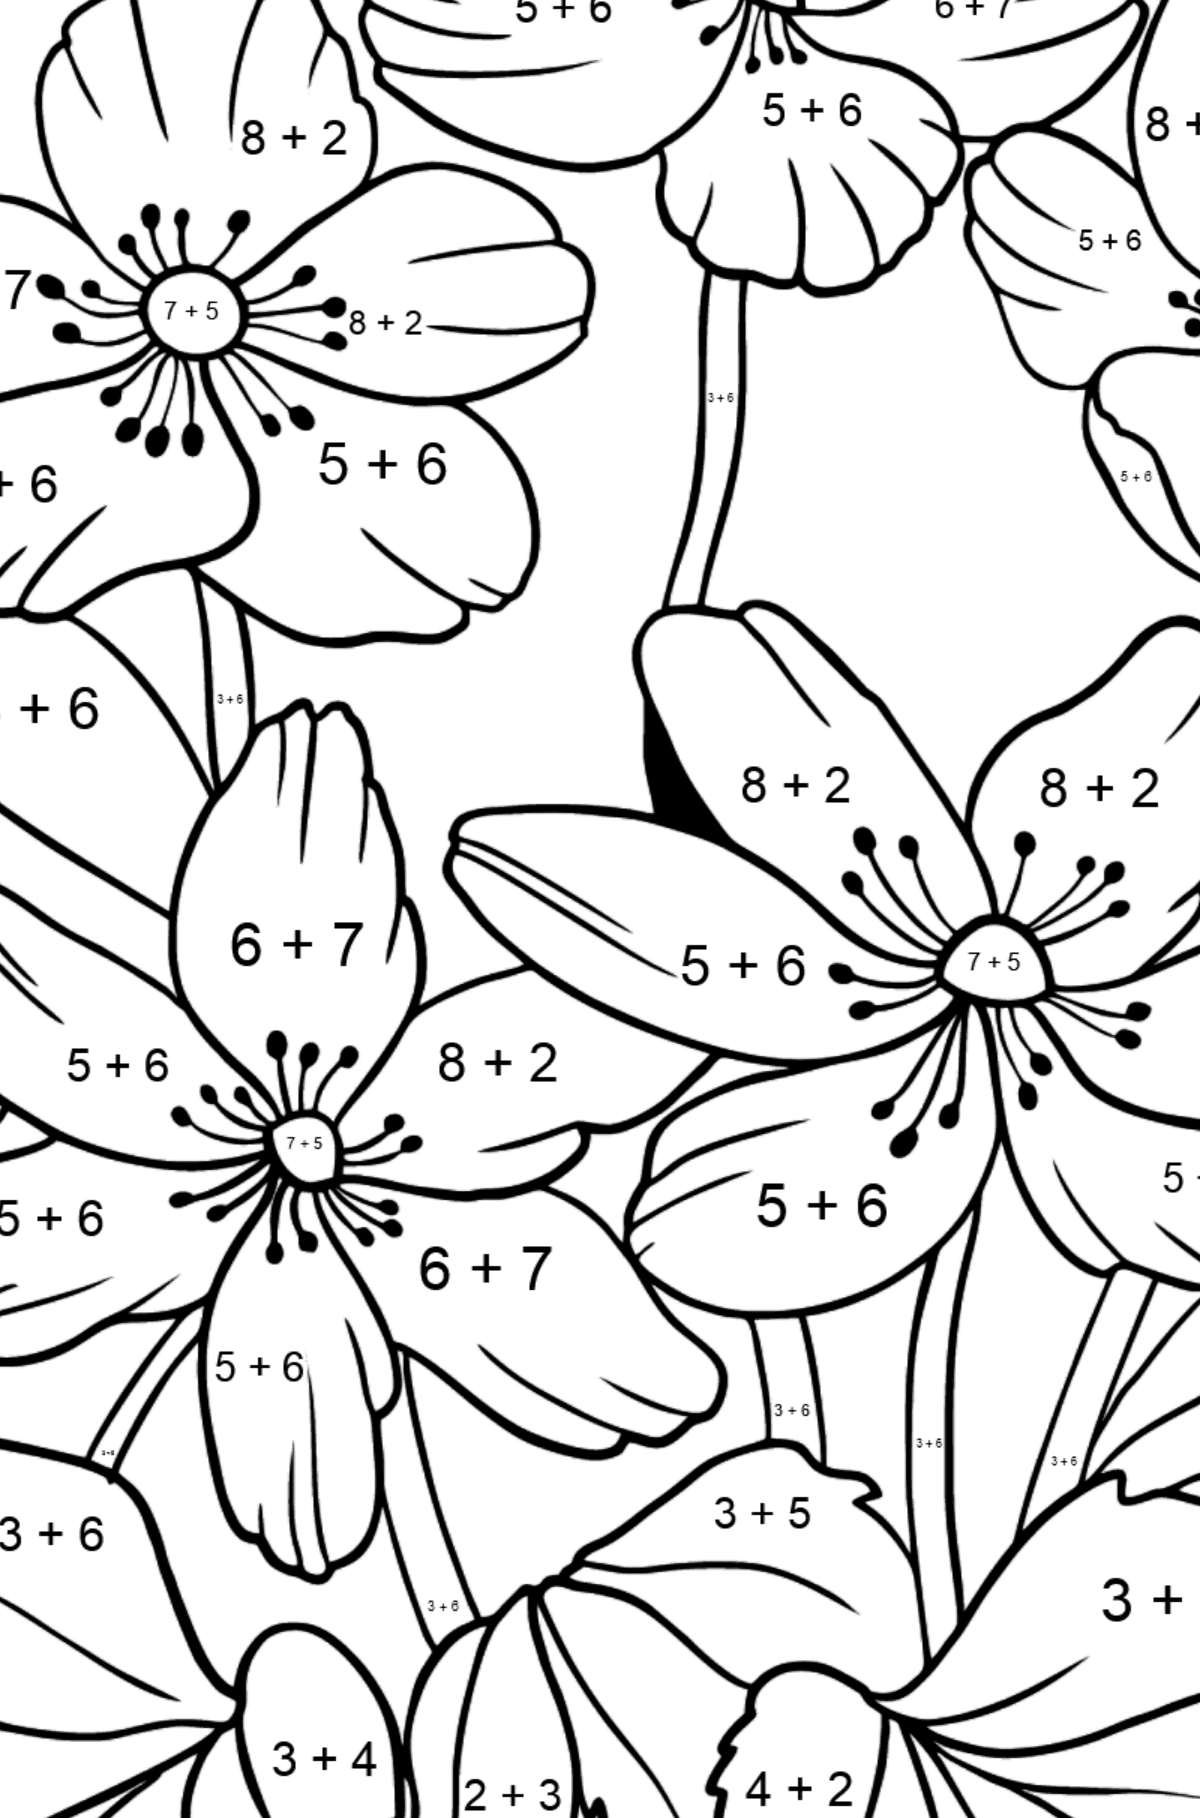 Omalovánka květiny Sasanka (složitě) - Matematická Omalovánka - Sčítání pro děti